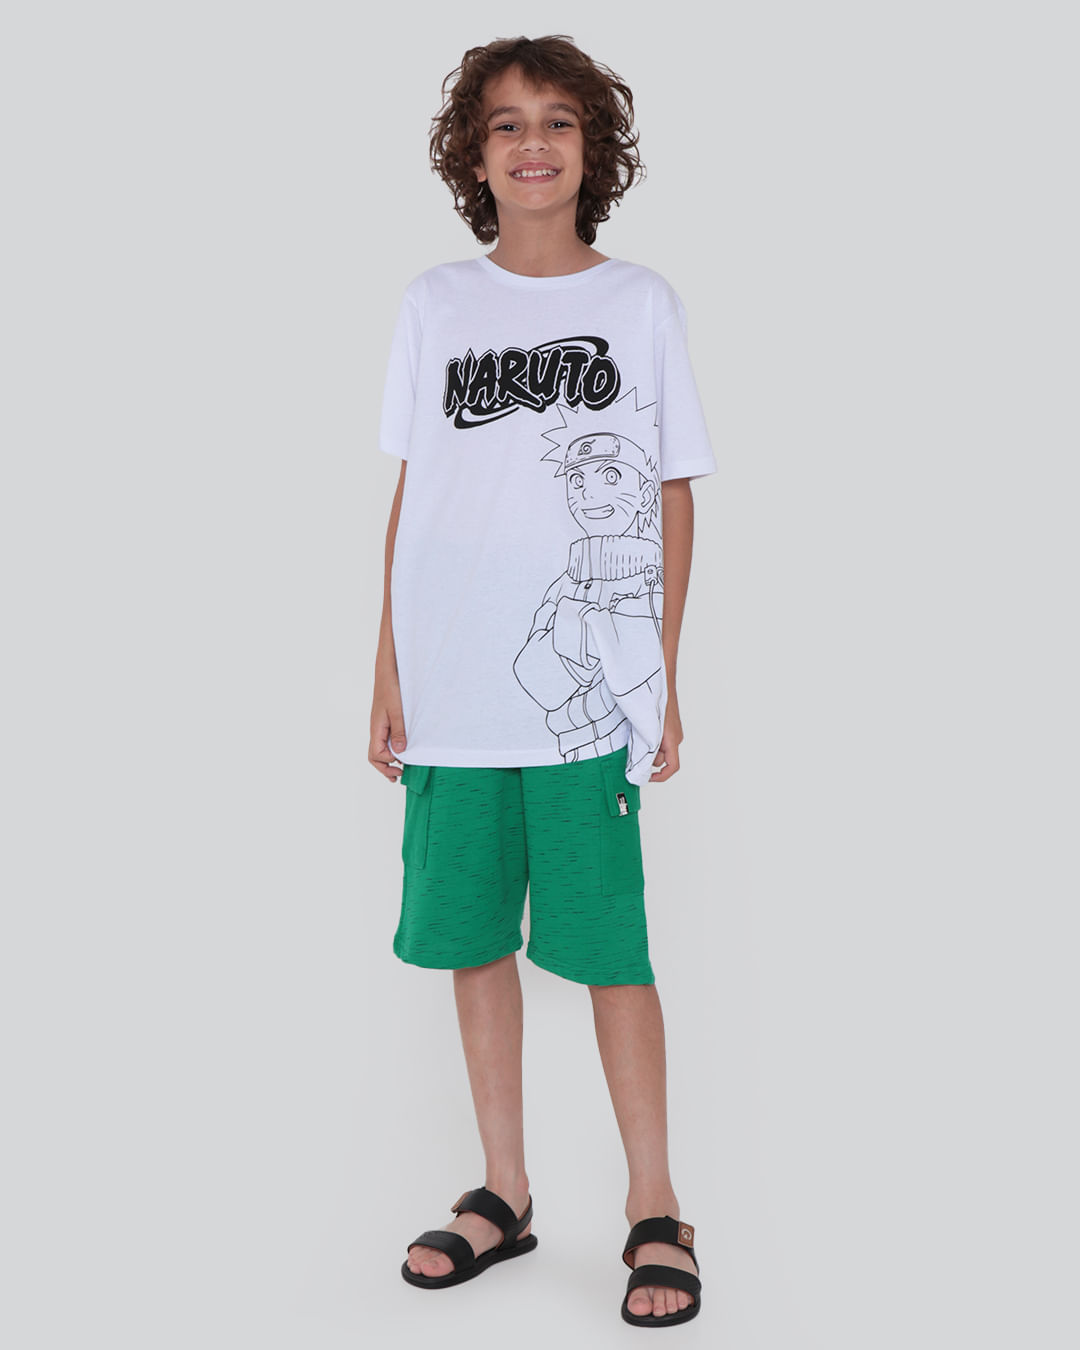 Camiseta-Juvenil-Estampa-Naruto-Preta-Branca